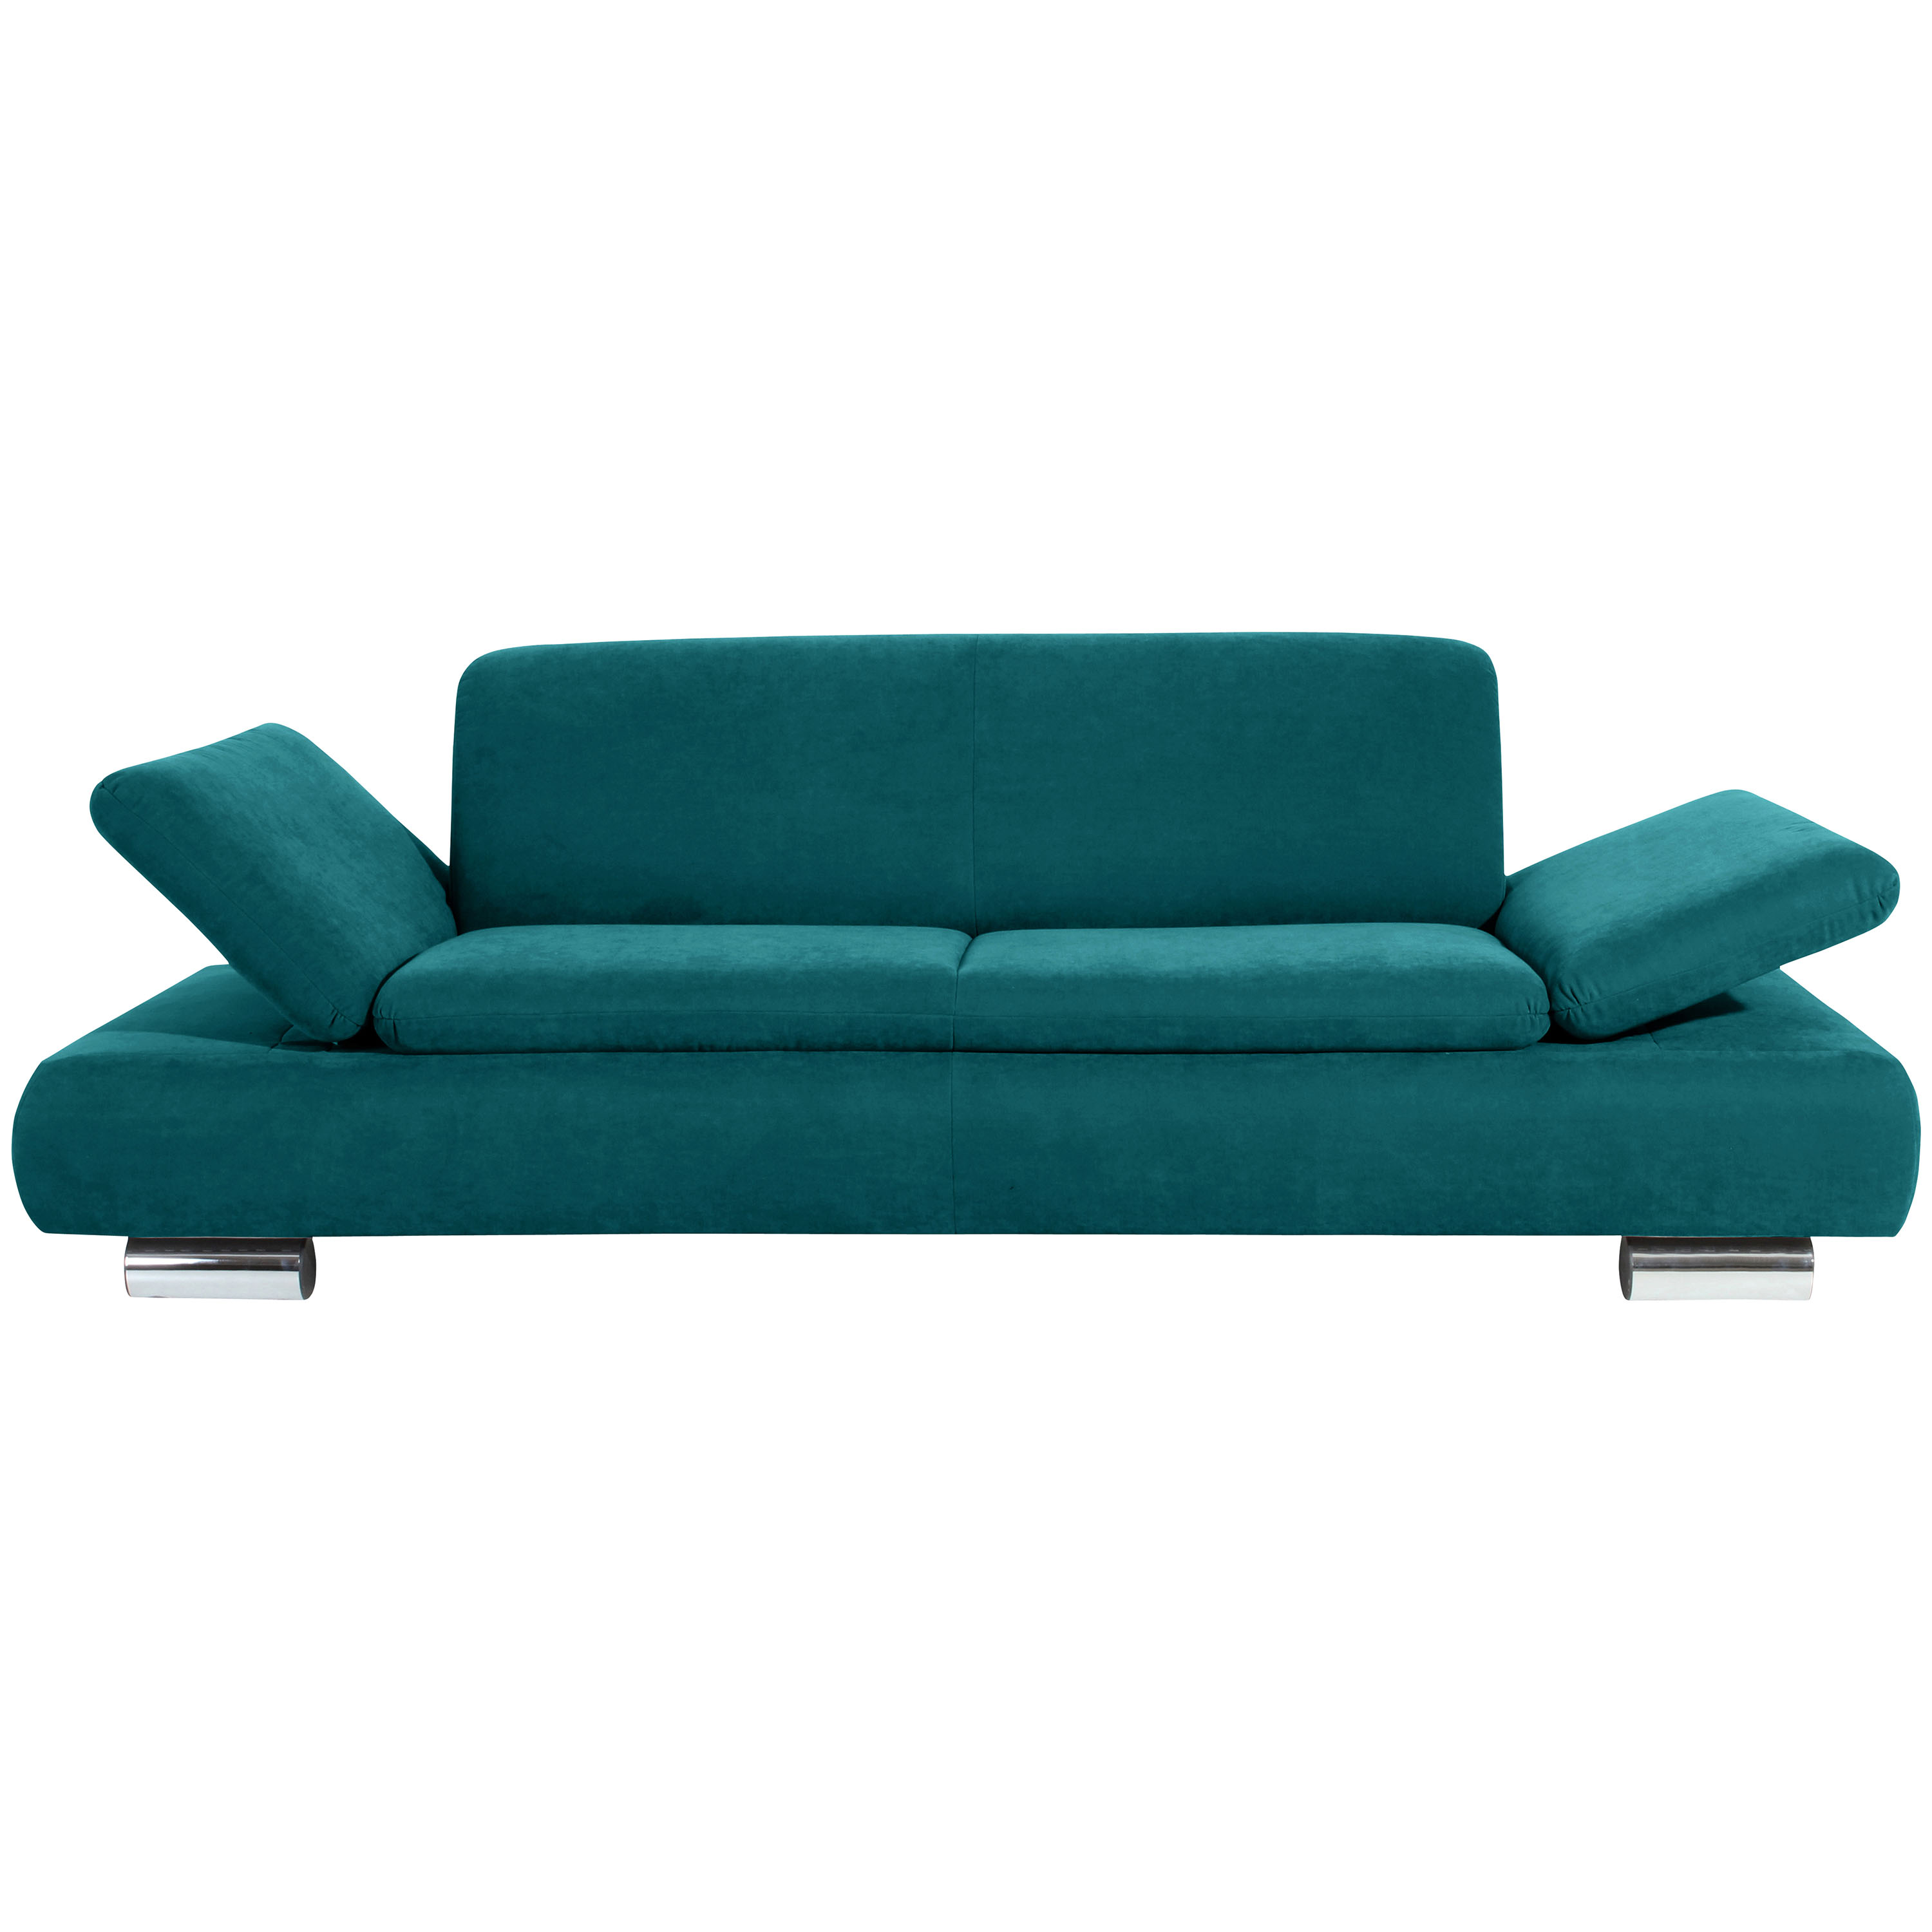 frontansicht von einem 2,5-sitzer sofa in petrol mit hochgeklappten armteilen und verchromten metallfüssen